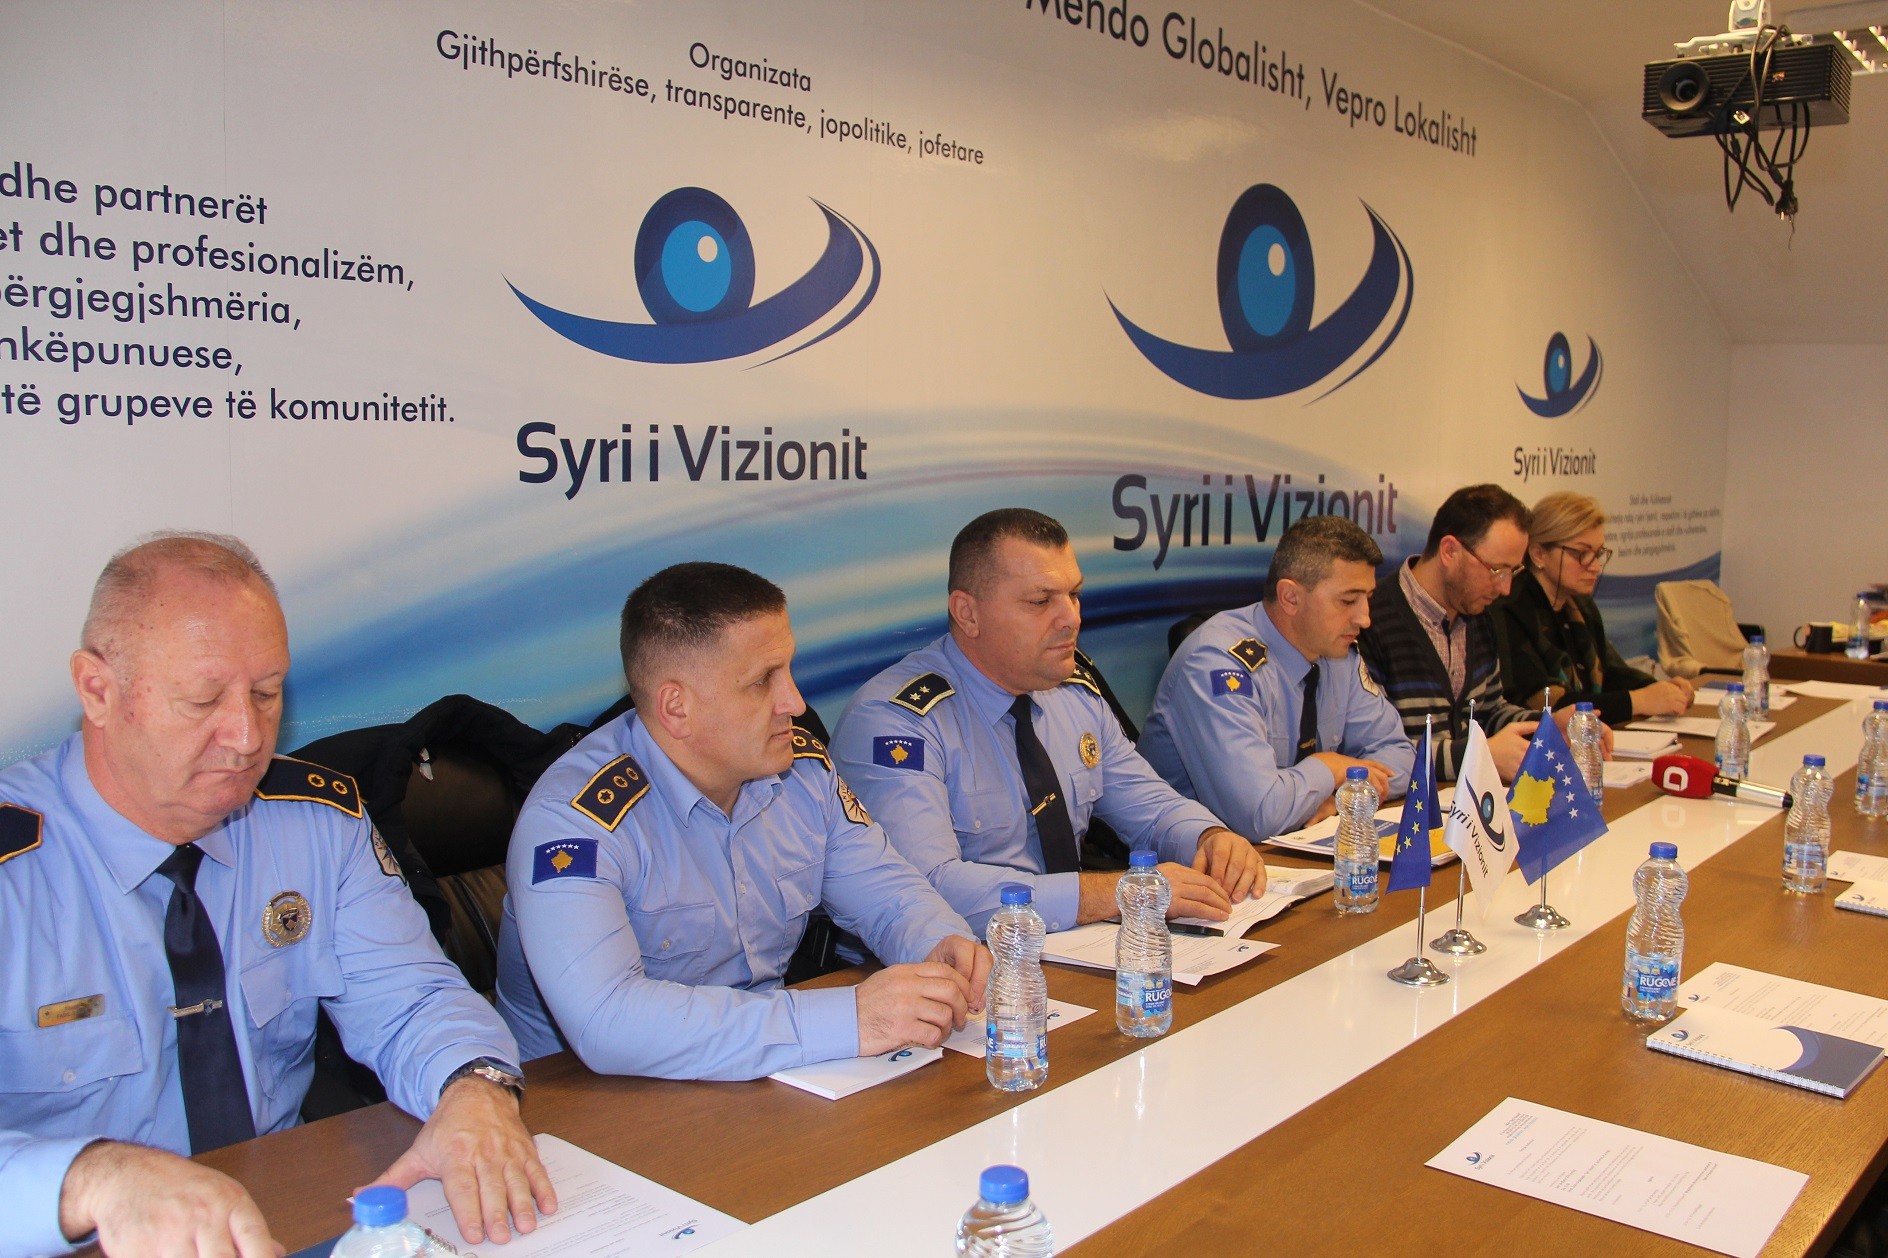 Publikohet raporti për besueshmërinë e qytetarëve në policinë e Kosovës 